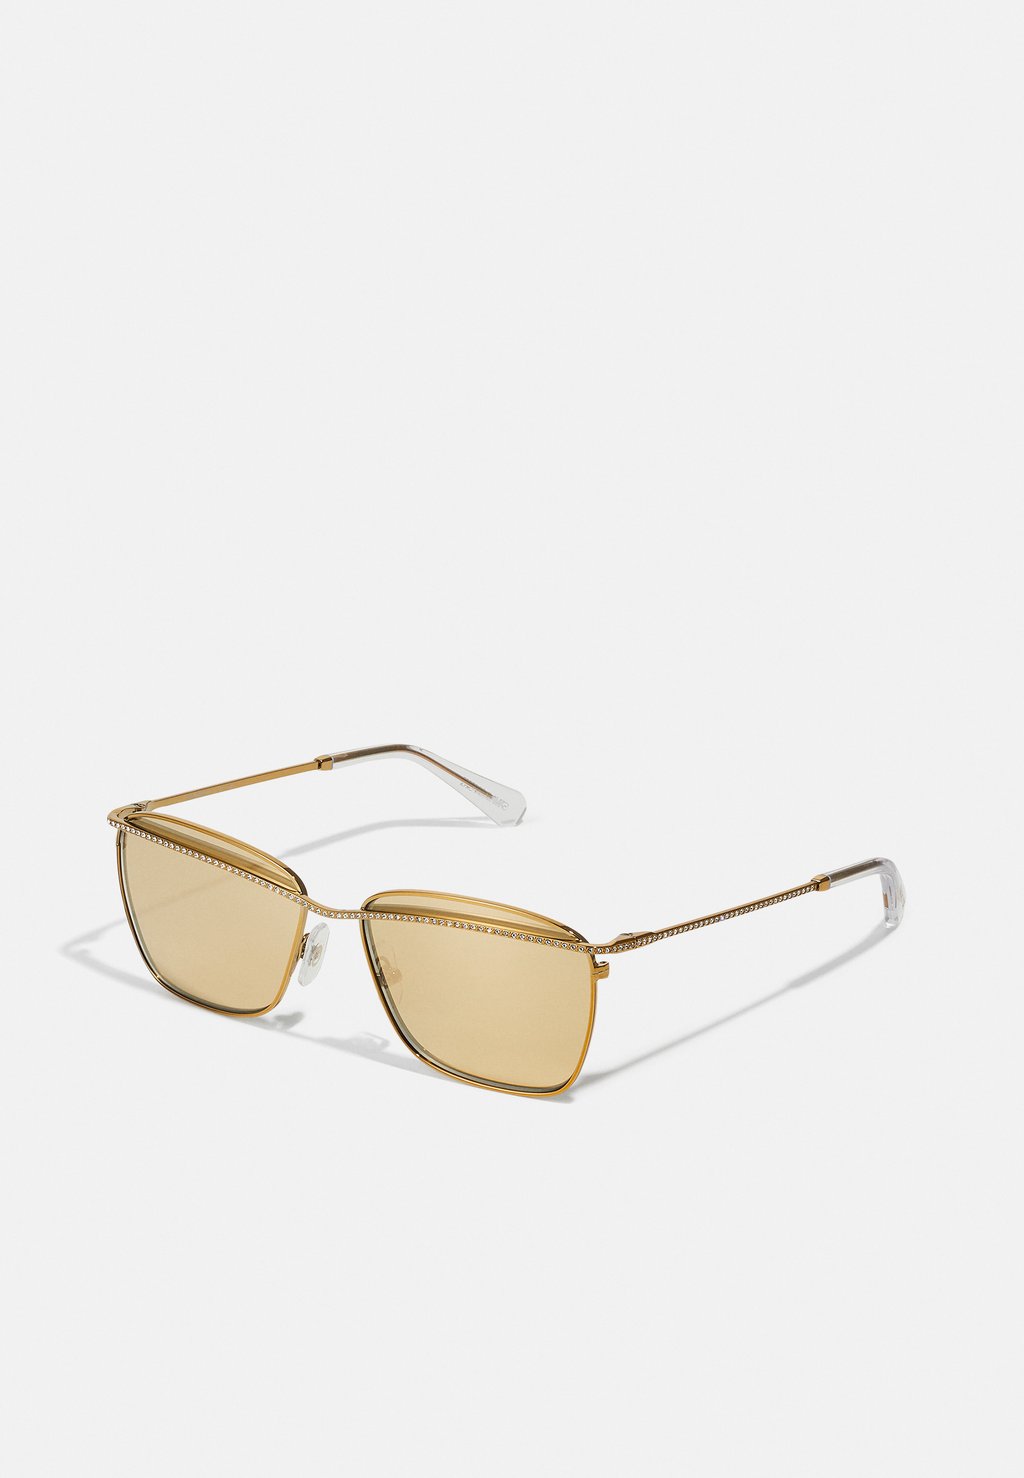 Солнцезащитные очки Swarovski, золотой